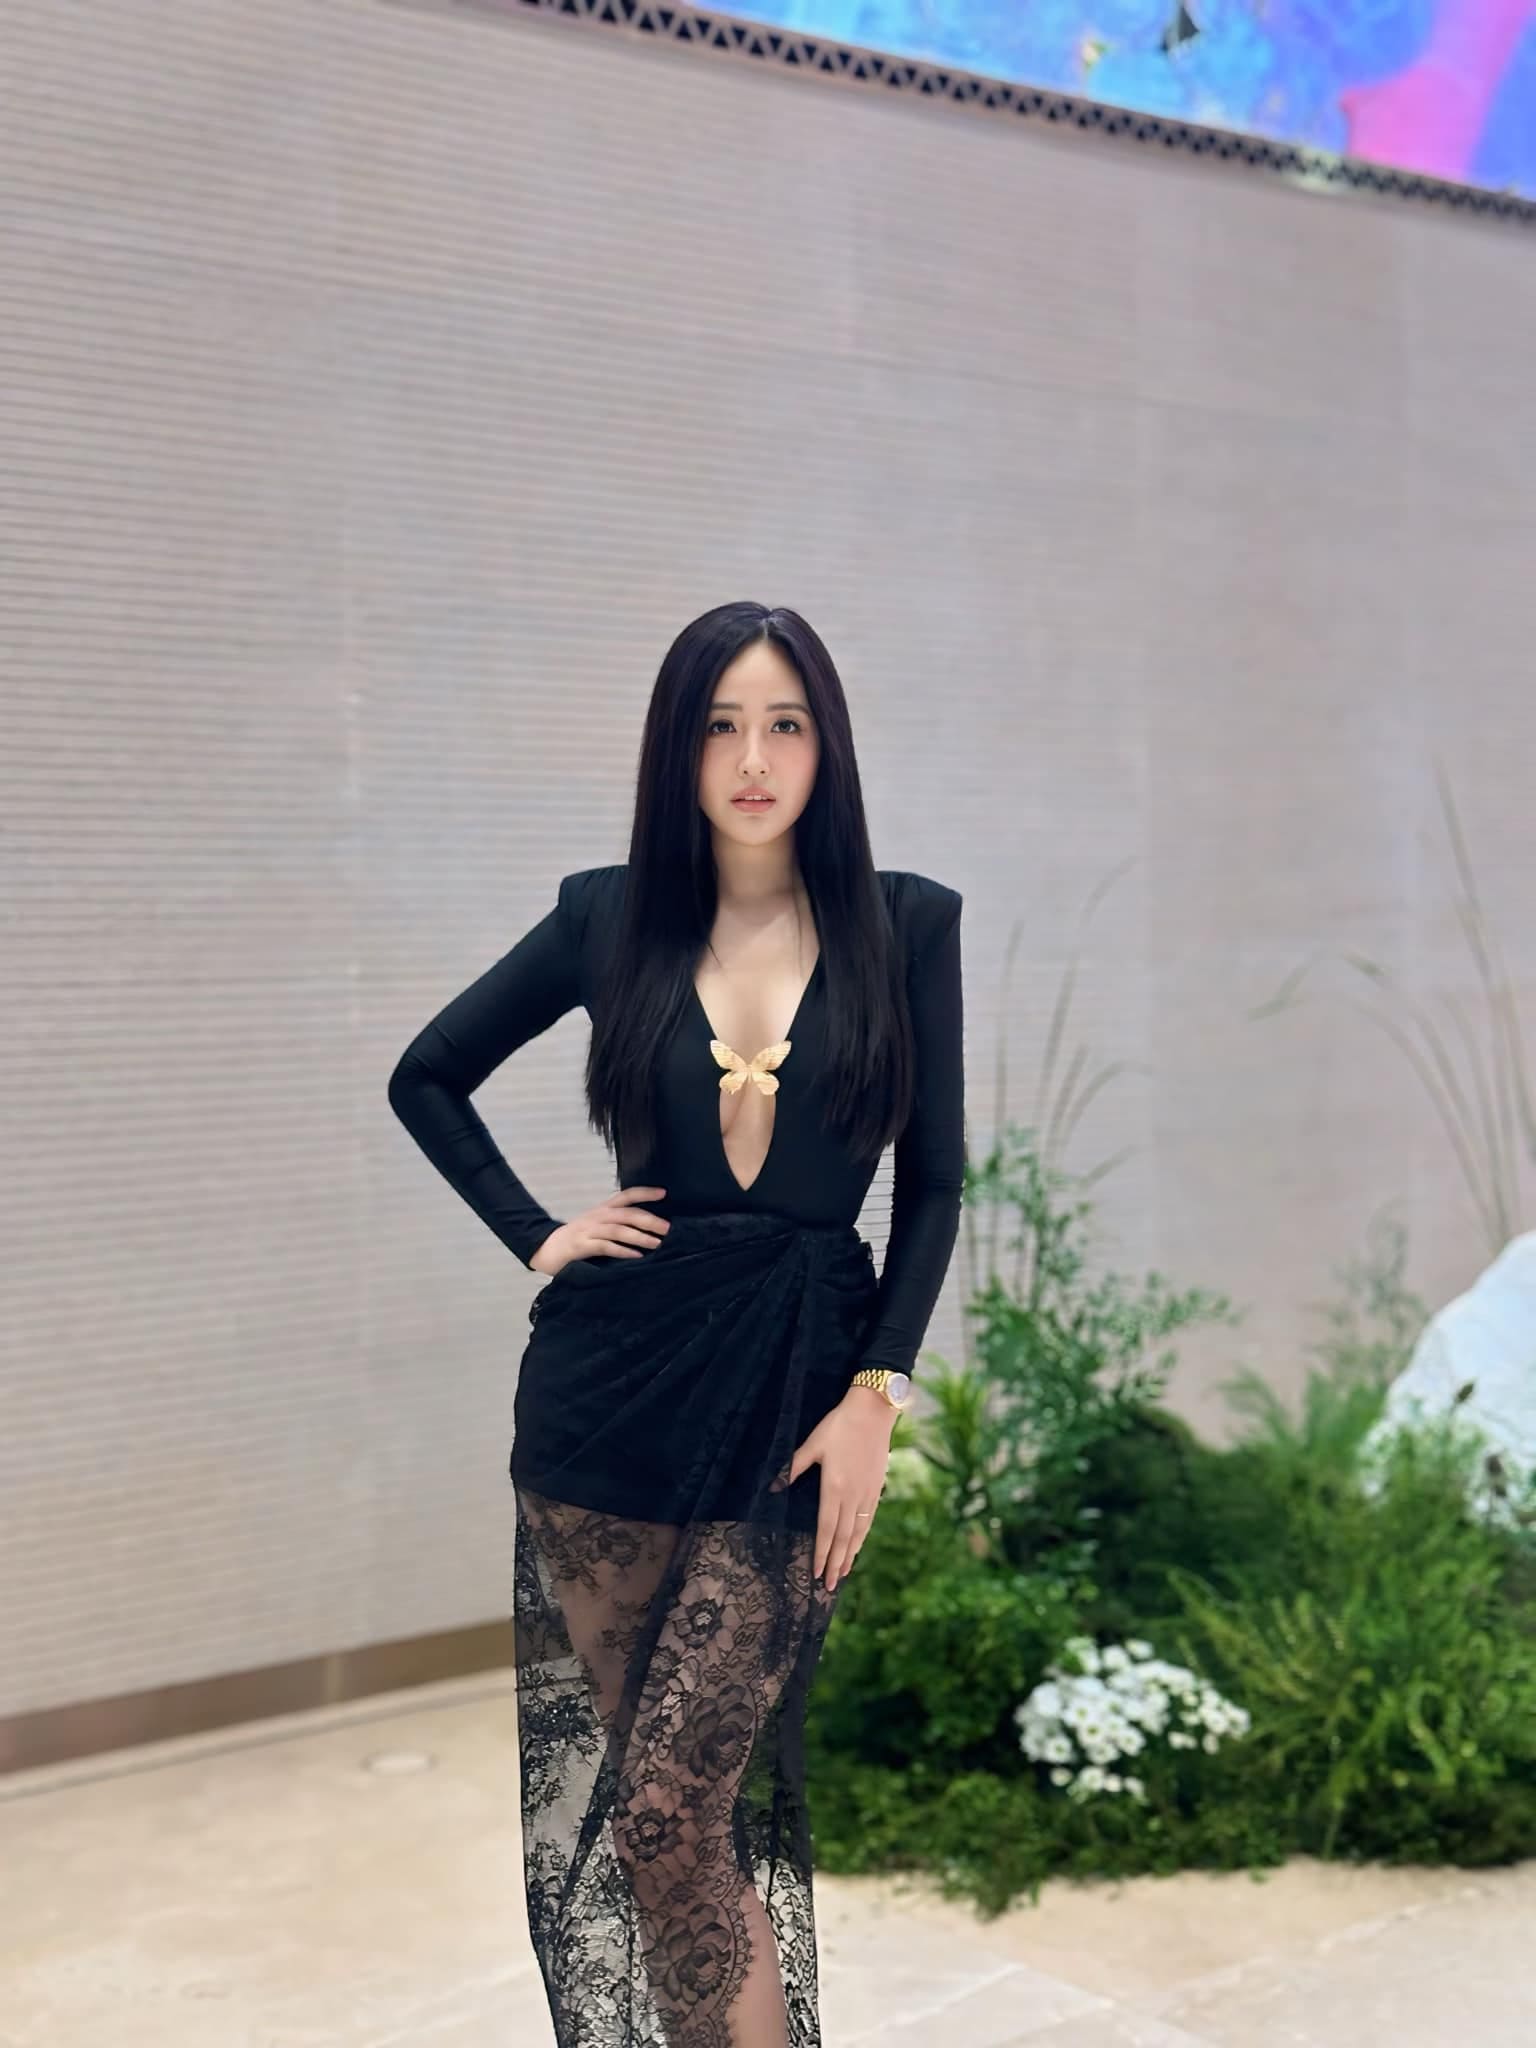 Đi dự cưới Midu, nhan sắc của hoa hậu Việt được ví đẹp như Kim Ji Won - Ảnh 5.